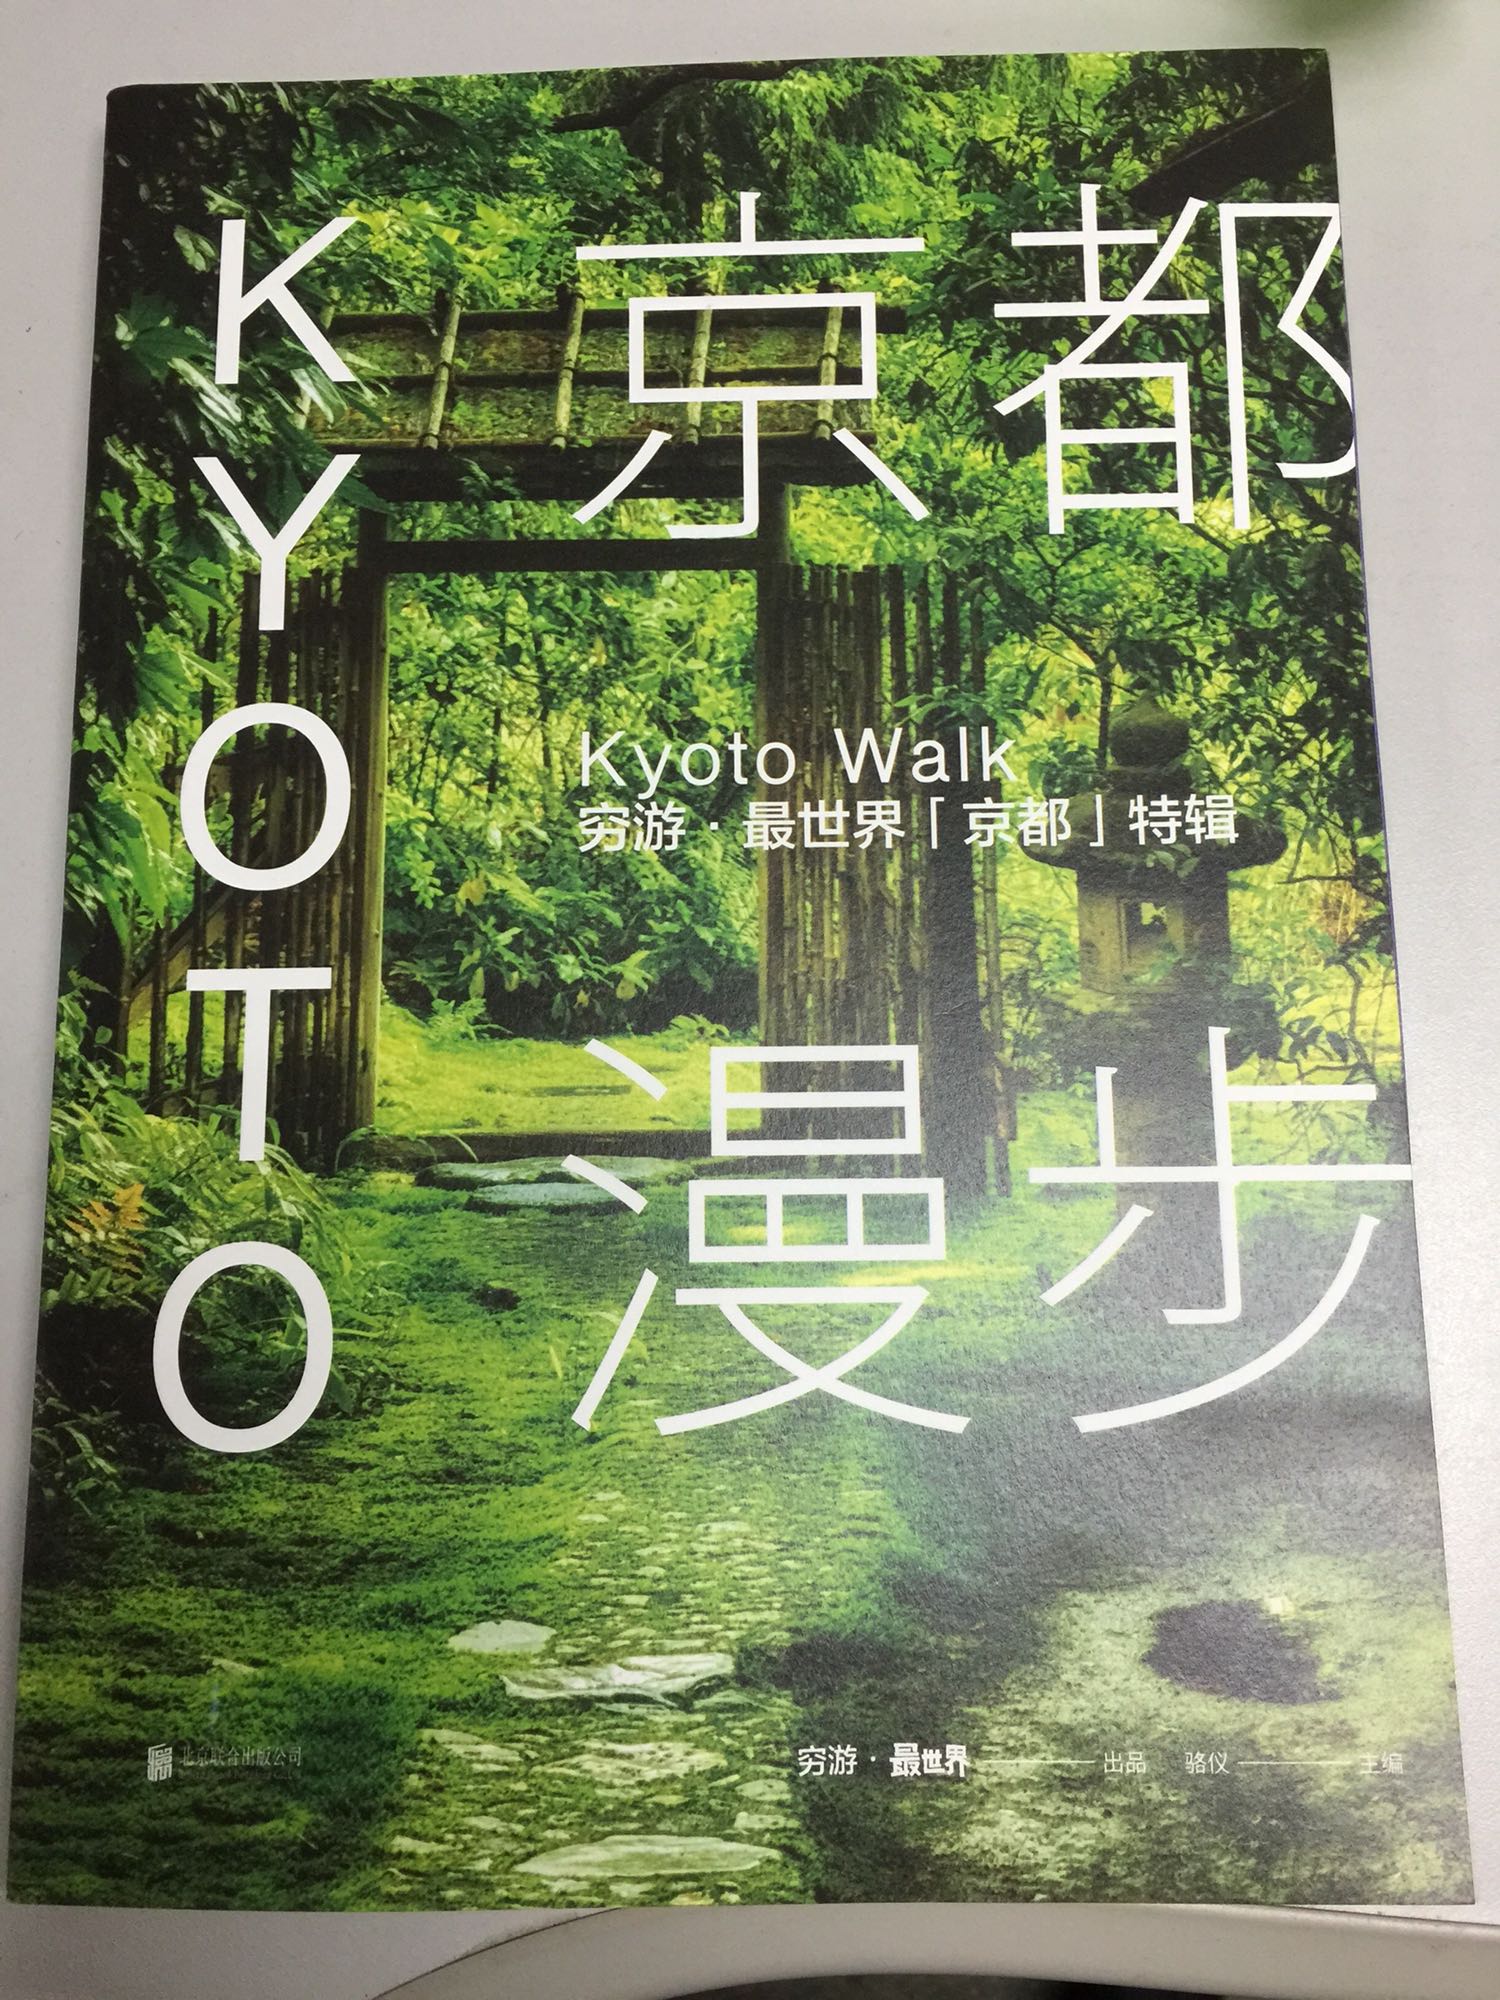 马上要去京都旅游了，买来提前做做攻略，书不错